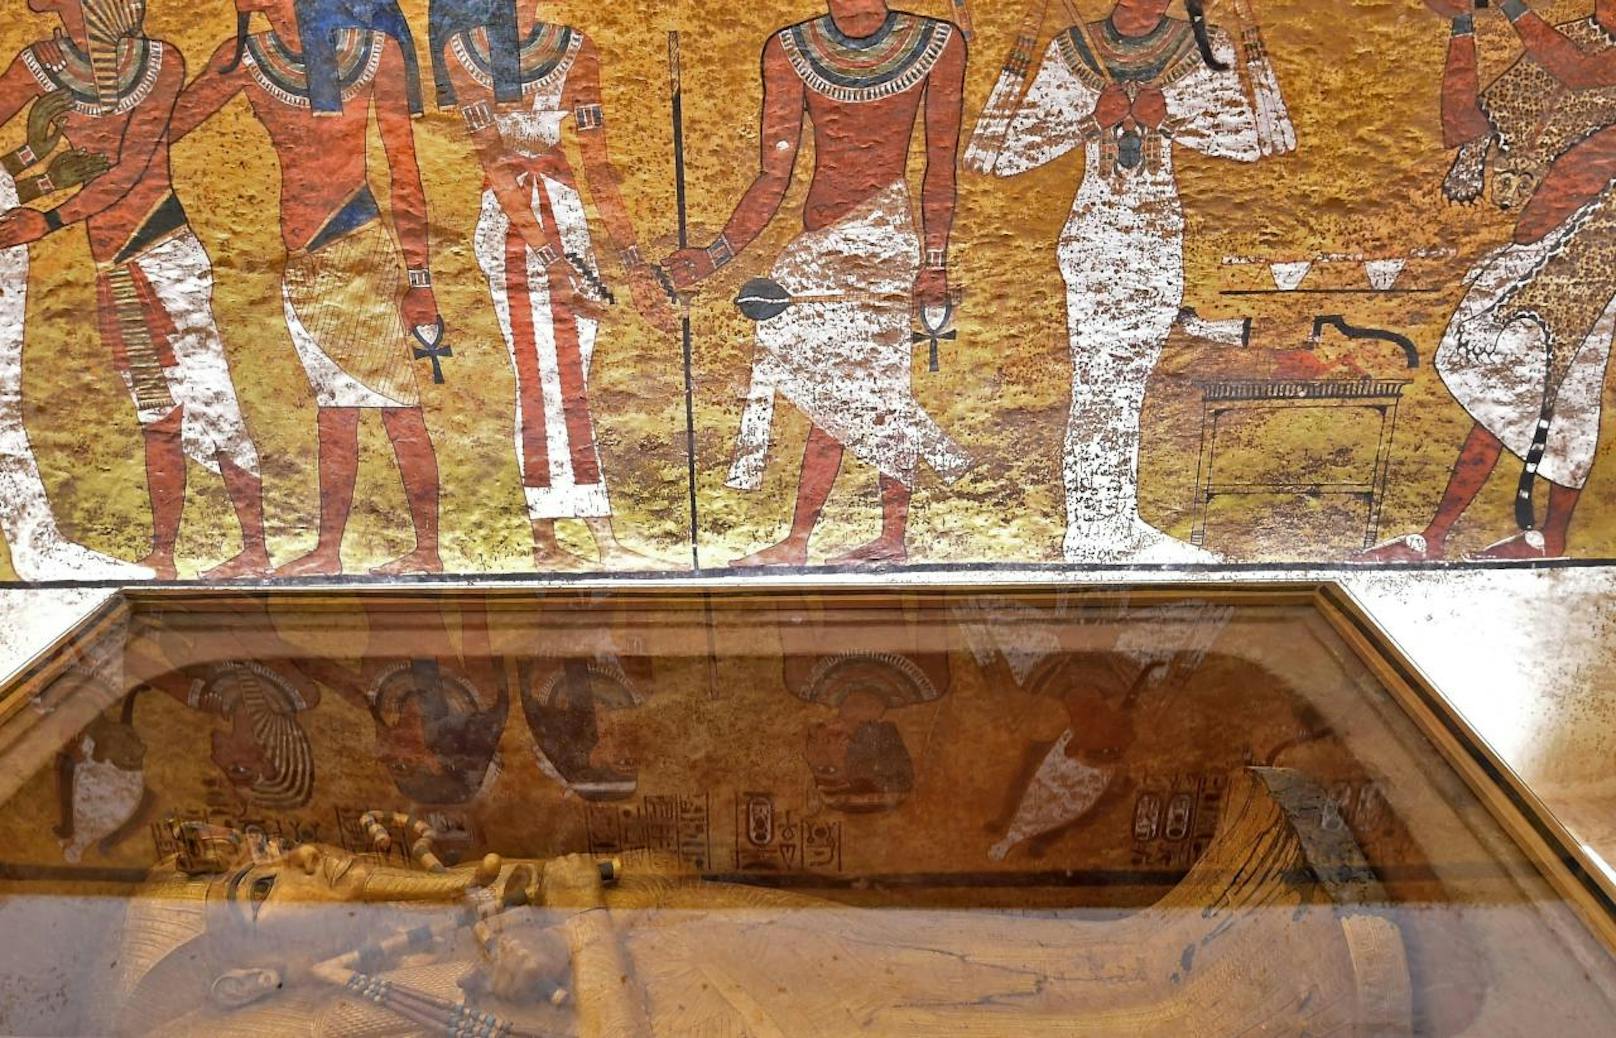 Weitere Bilder aus dem restaurierten Grabmal des Pharaos zum Durchklicken >>>